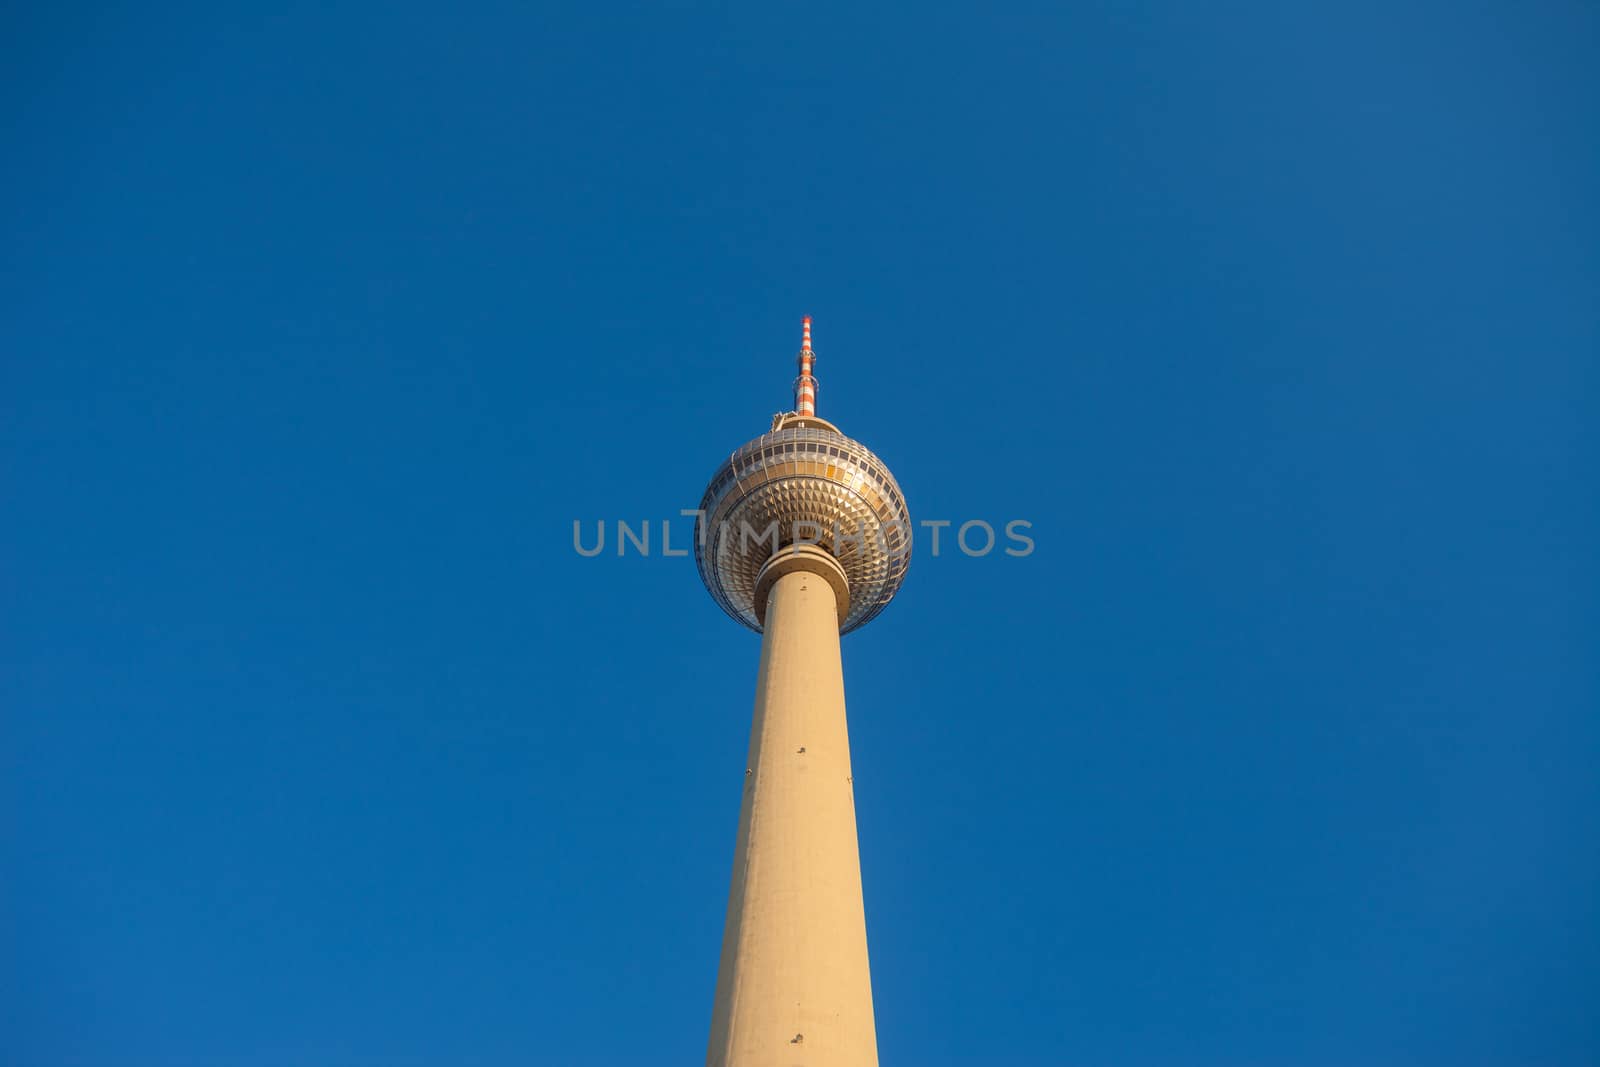 Fernsehturm (TV Tower), Berlin Alexanderplatz by edan